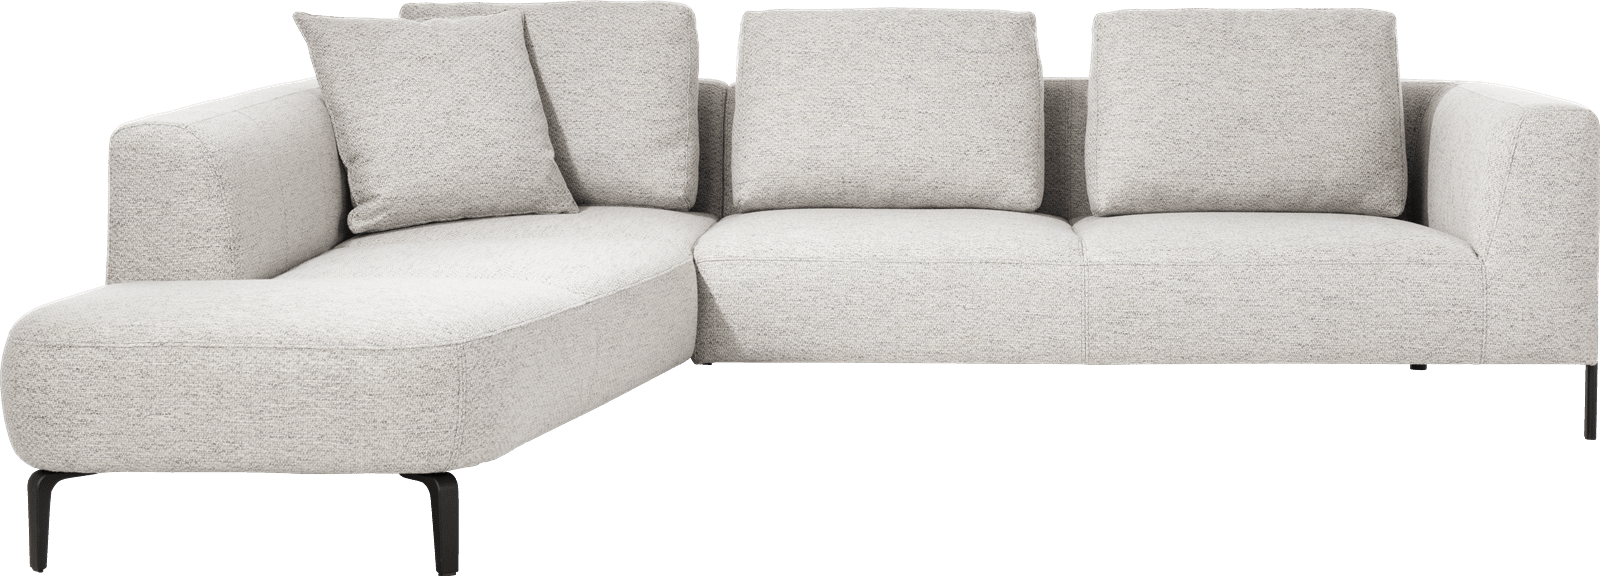 XOOON - Brampton - Sofas - 2.5-Sitzer Armlehne rechts